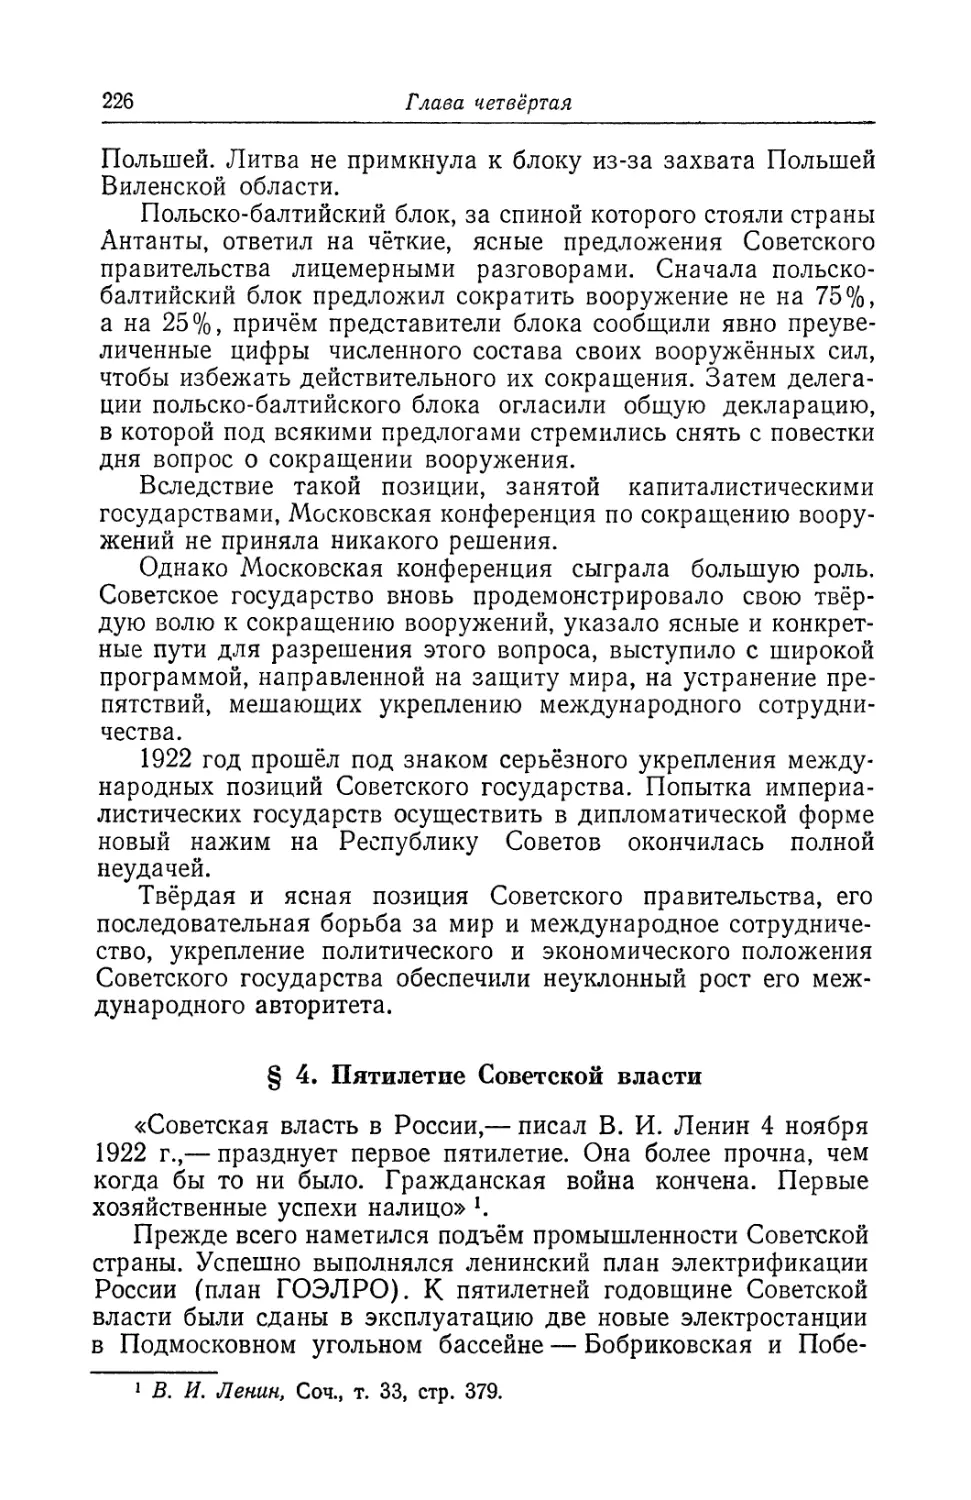 § 4. Пятилетие Советской власти